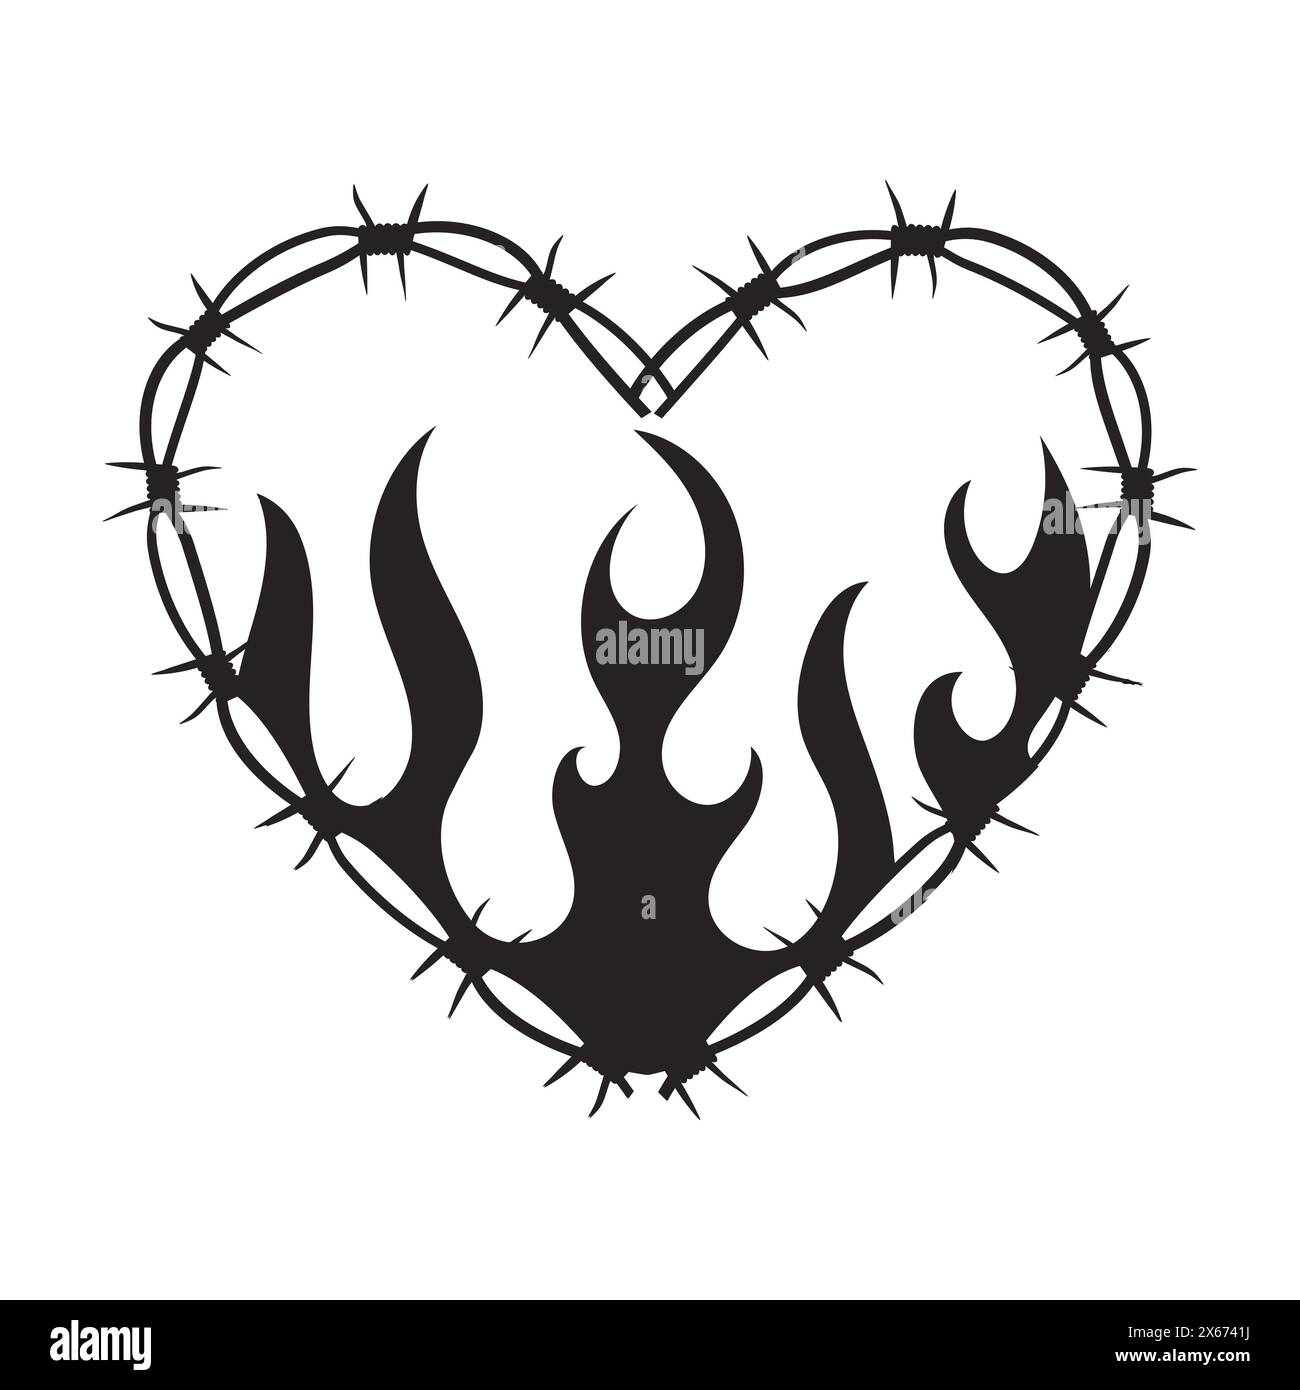 Cornice a forma di cuore Wire Barb bordo tatuaggio y2k con silhouette fiamma stampa gotica spiky punk neo tribale isolata su sfondo bianco. Barbwire emo forma del cuore perimetrale. Illustrazione vettoriale Illustrazione Vettoriale